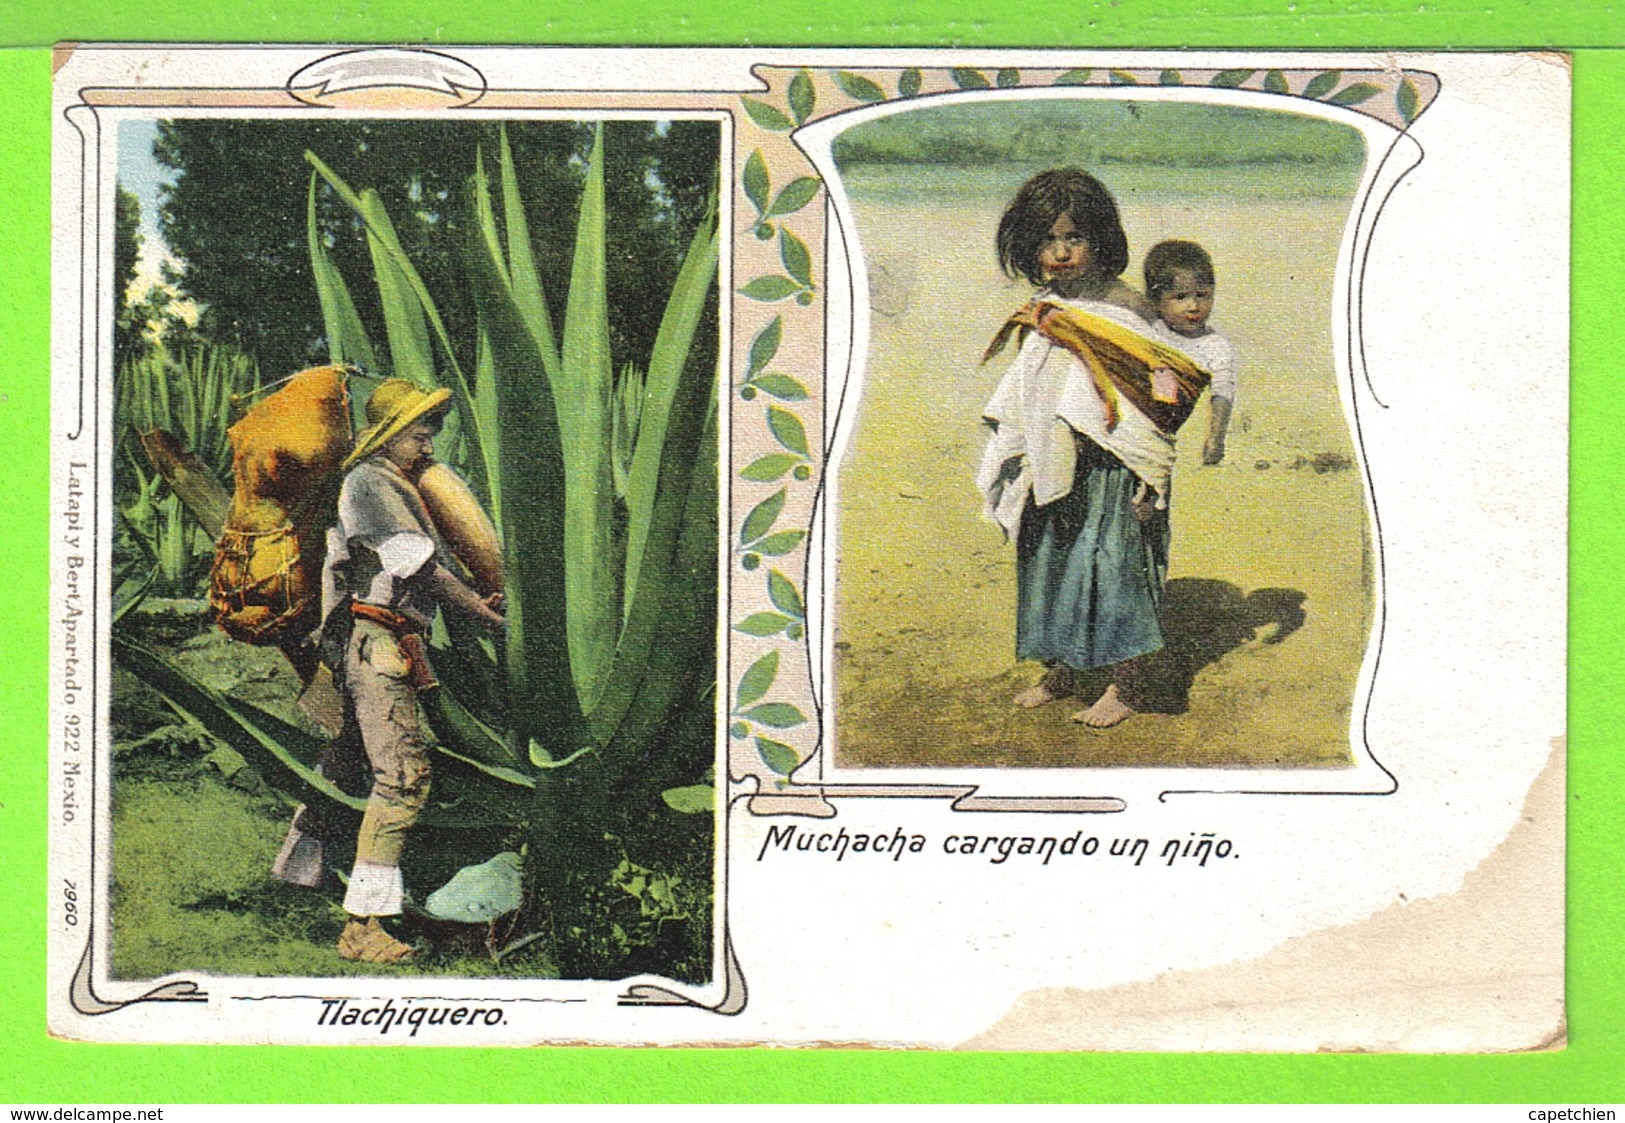 MEXICO / TLACHIQUERO Y MUCHACHA CARGANDO UN NIÑO / Tarjeta Virgen - México